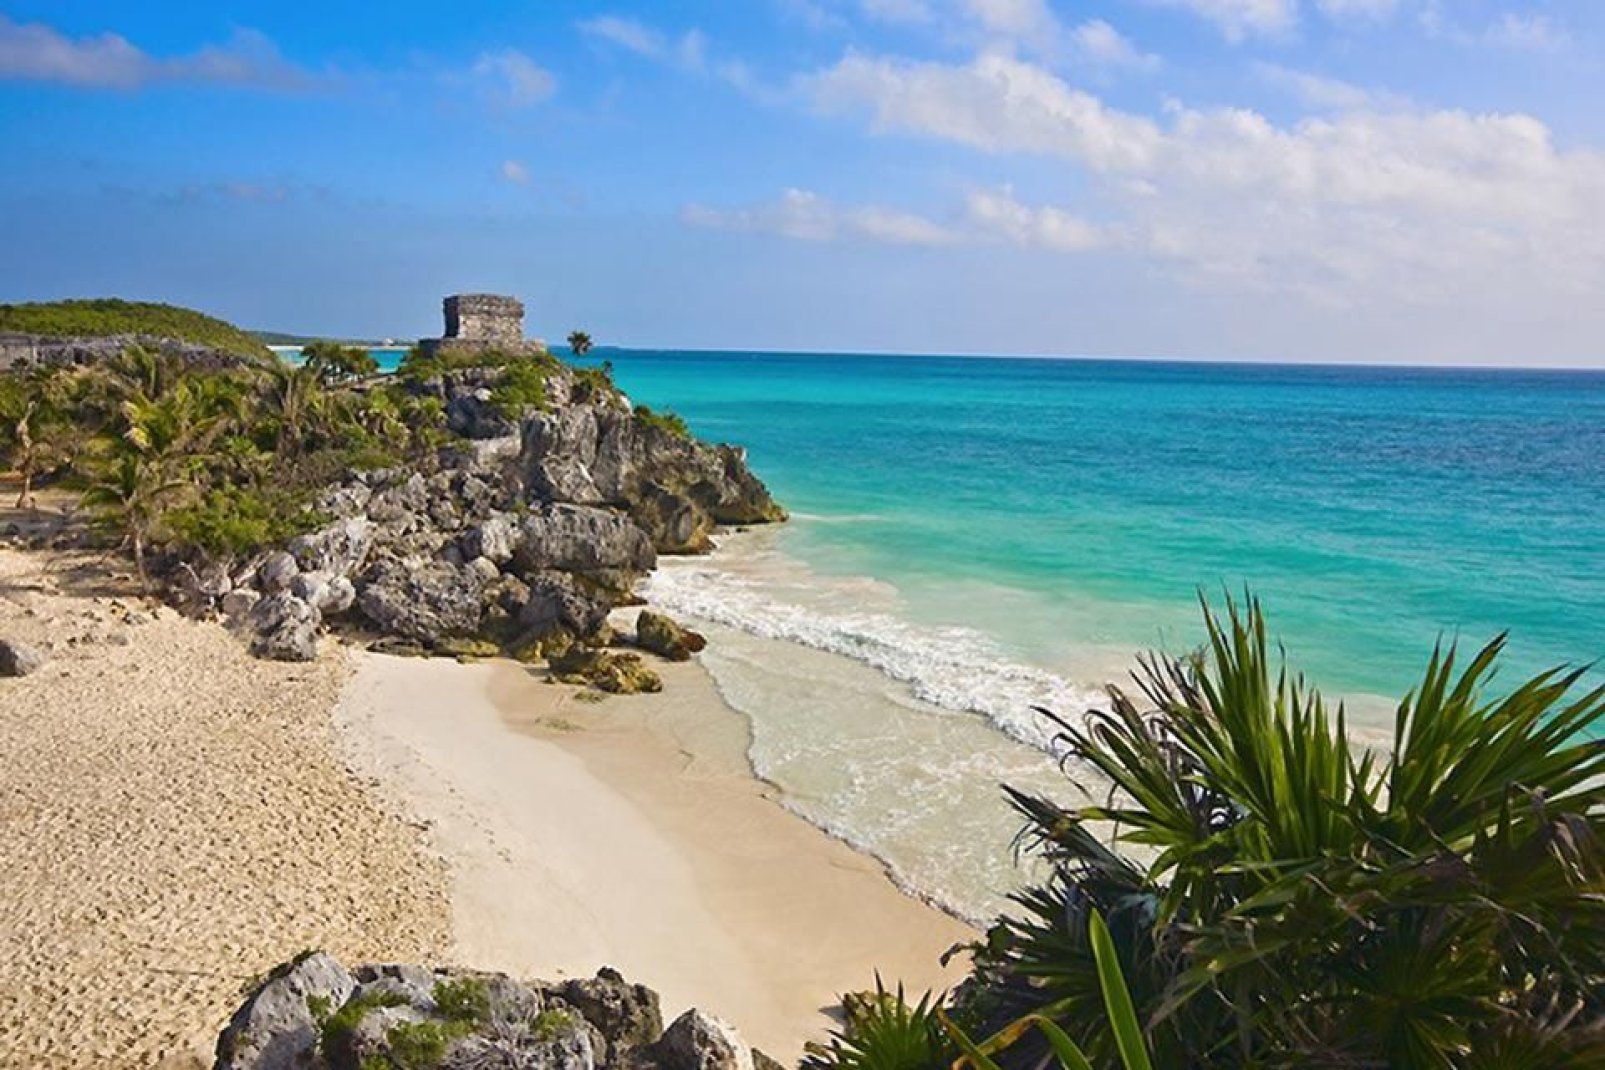 Grazie alle sue spiagge, Cancun attrae numerosi turisti, la maggior parte proviene dagli Stati Uniti e dal Canada.